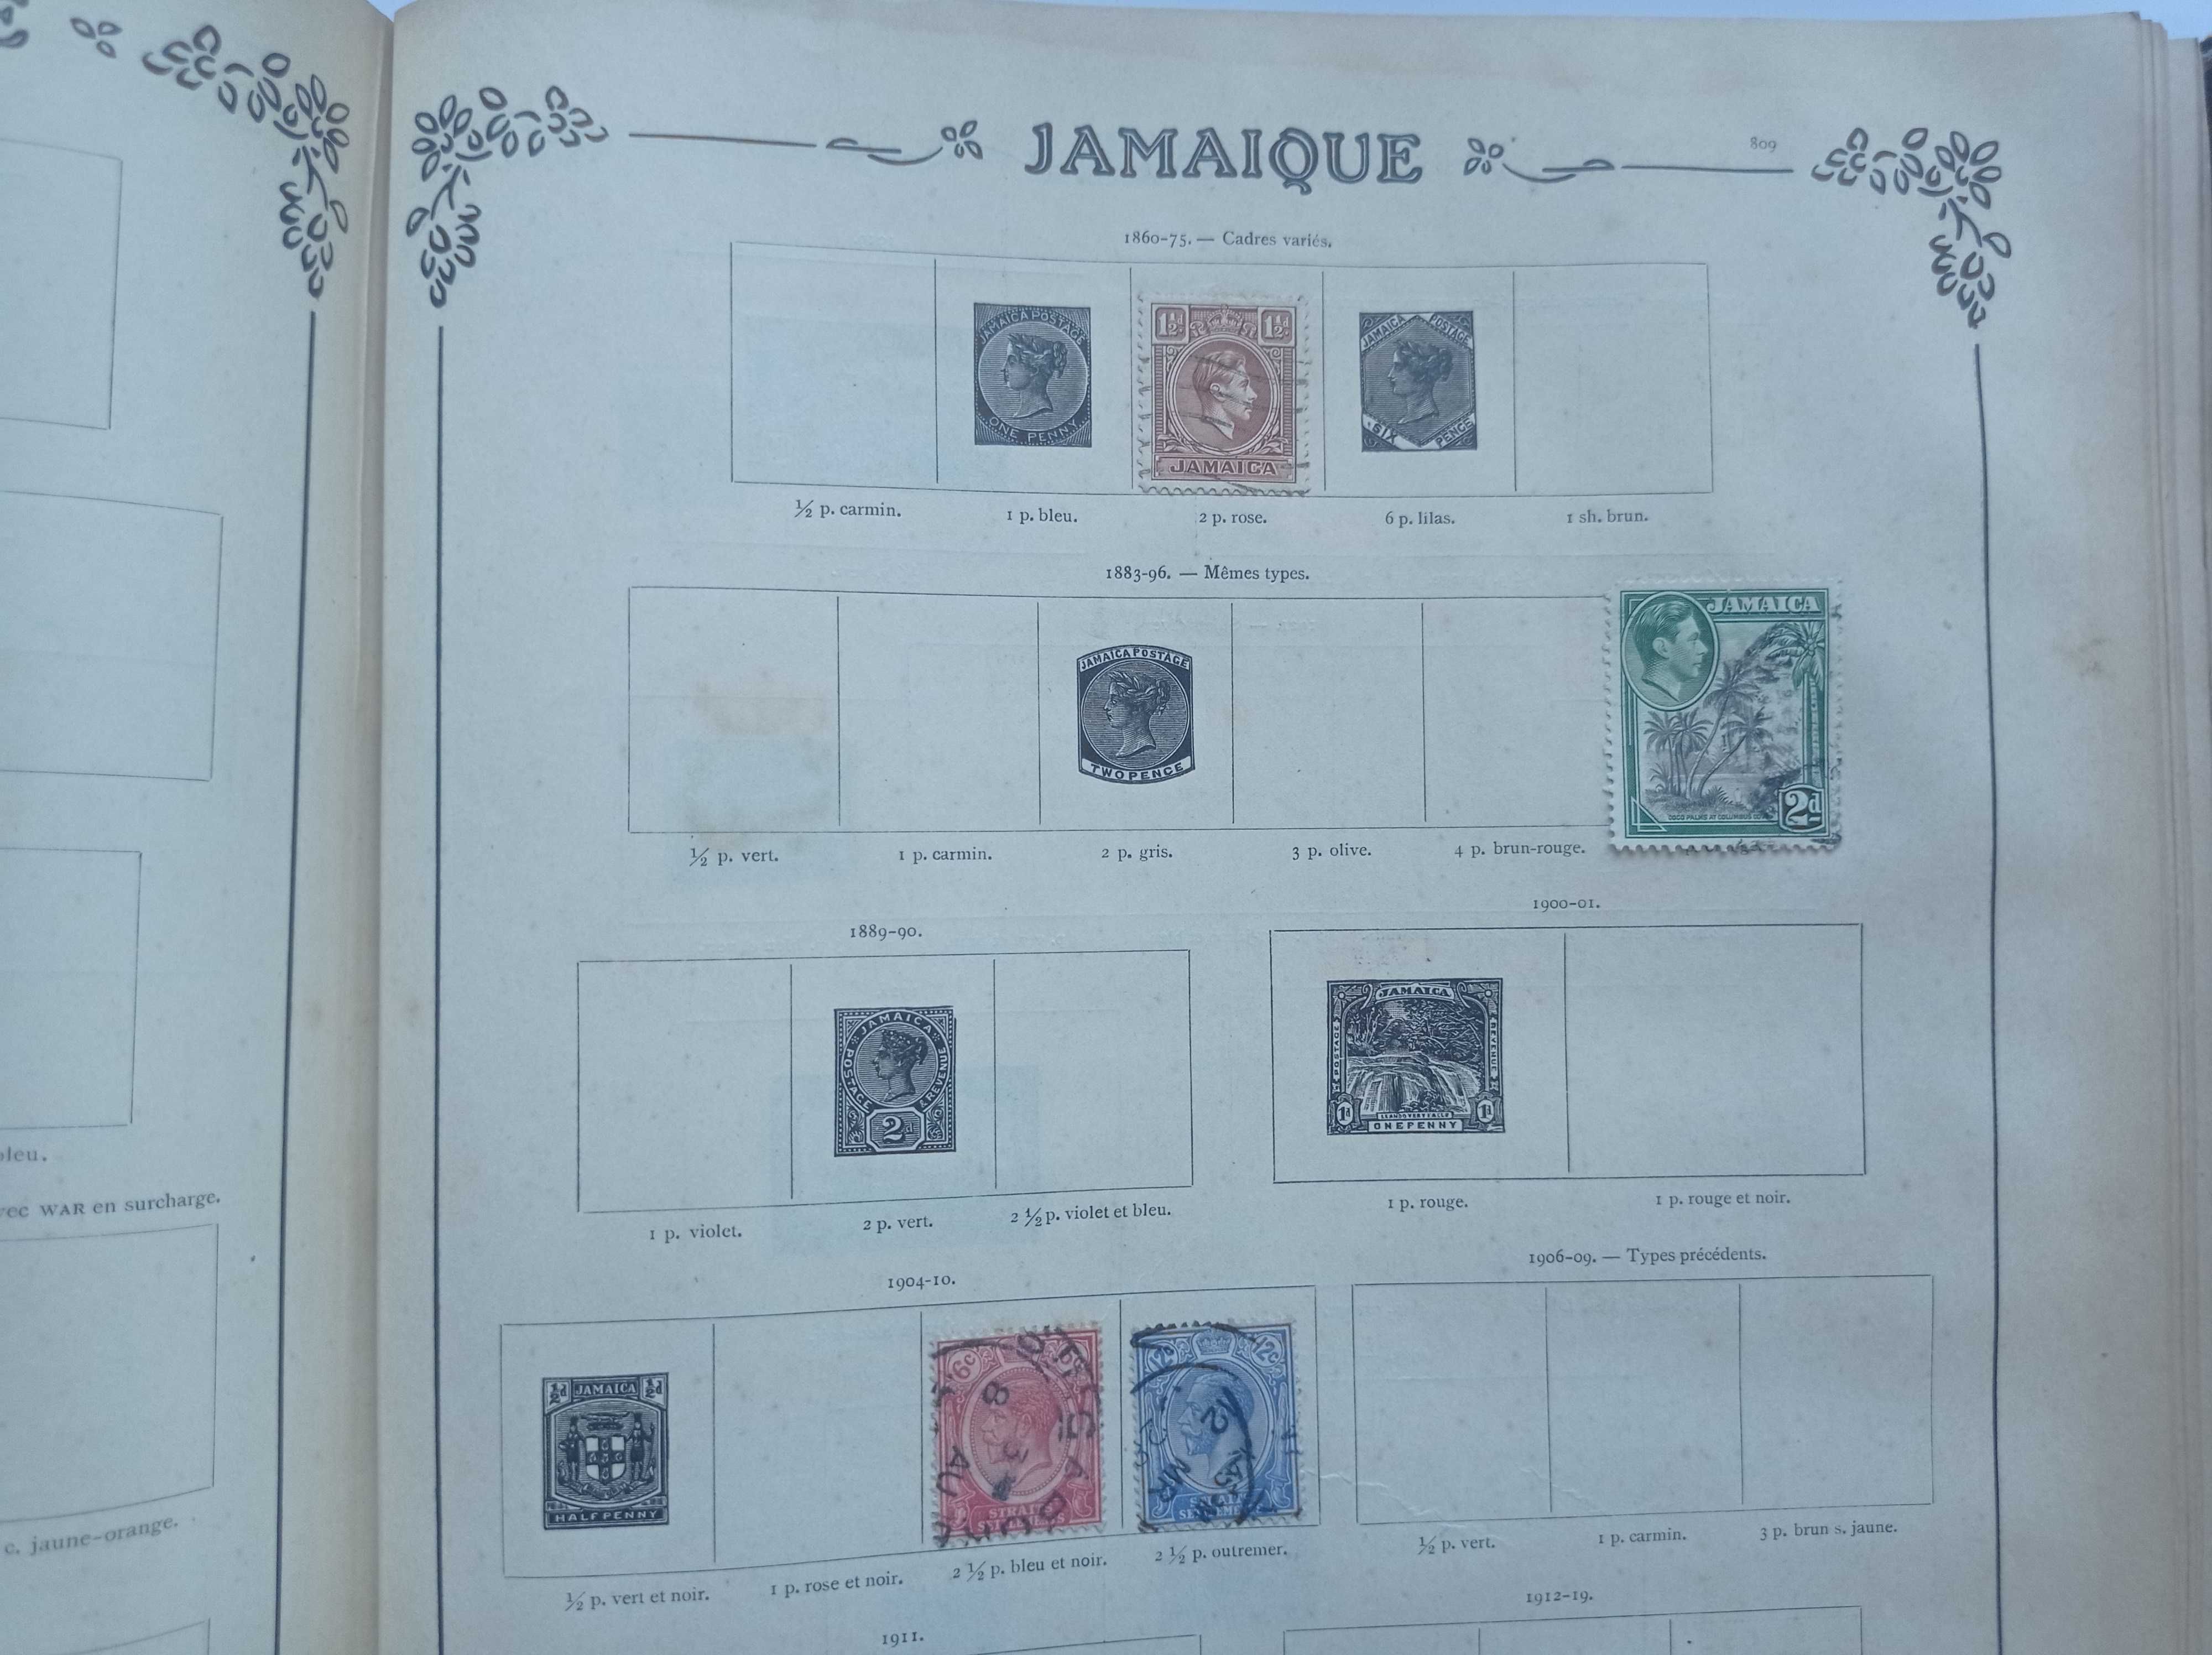 Album Timbres-Poste - 1850 - 1950 - Świat + 854 znaczki pocztowe.